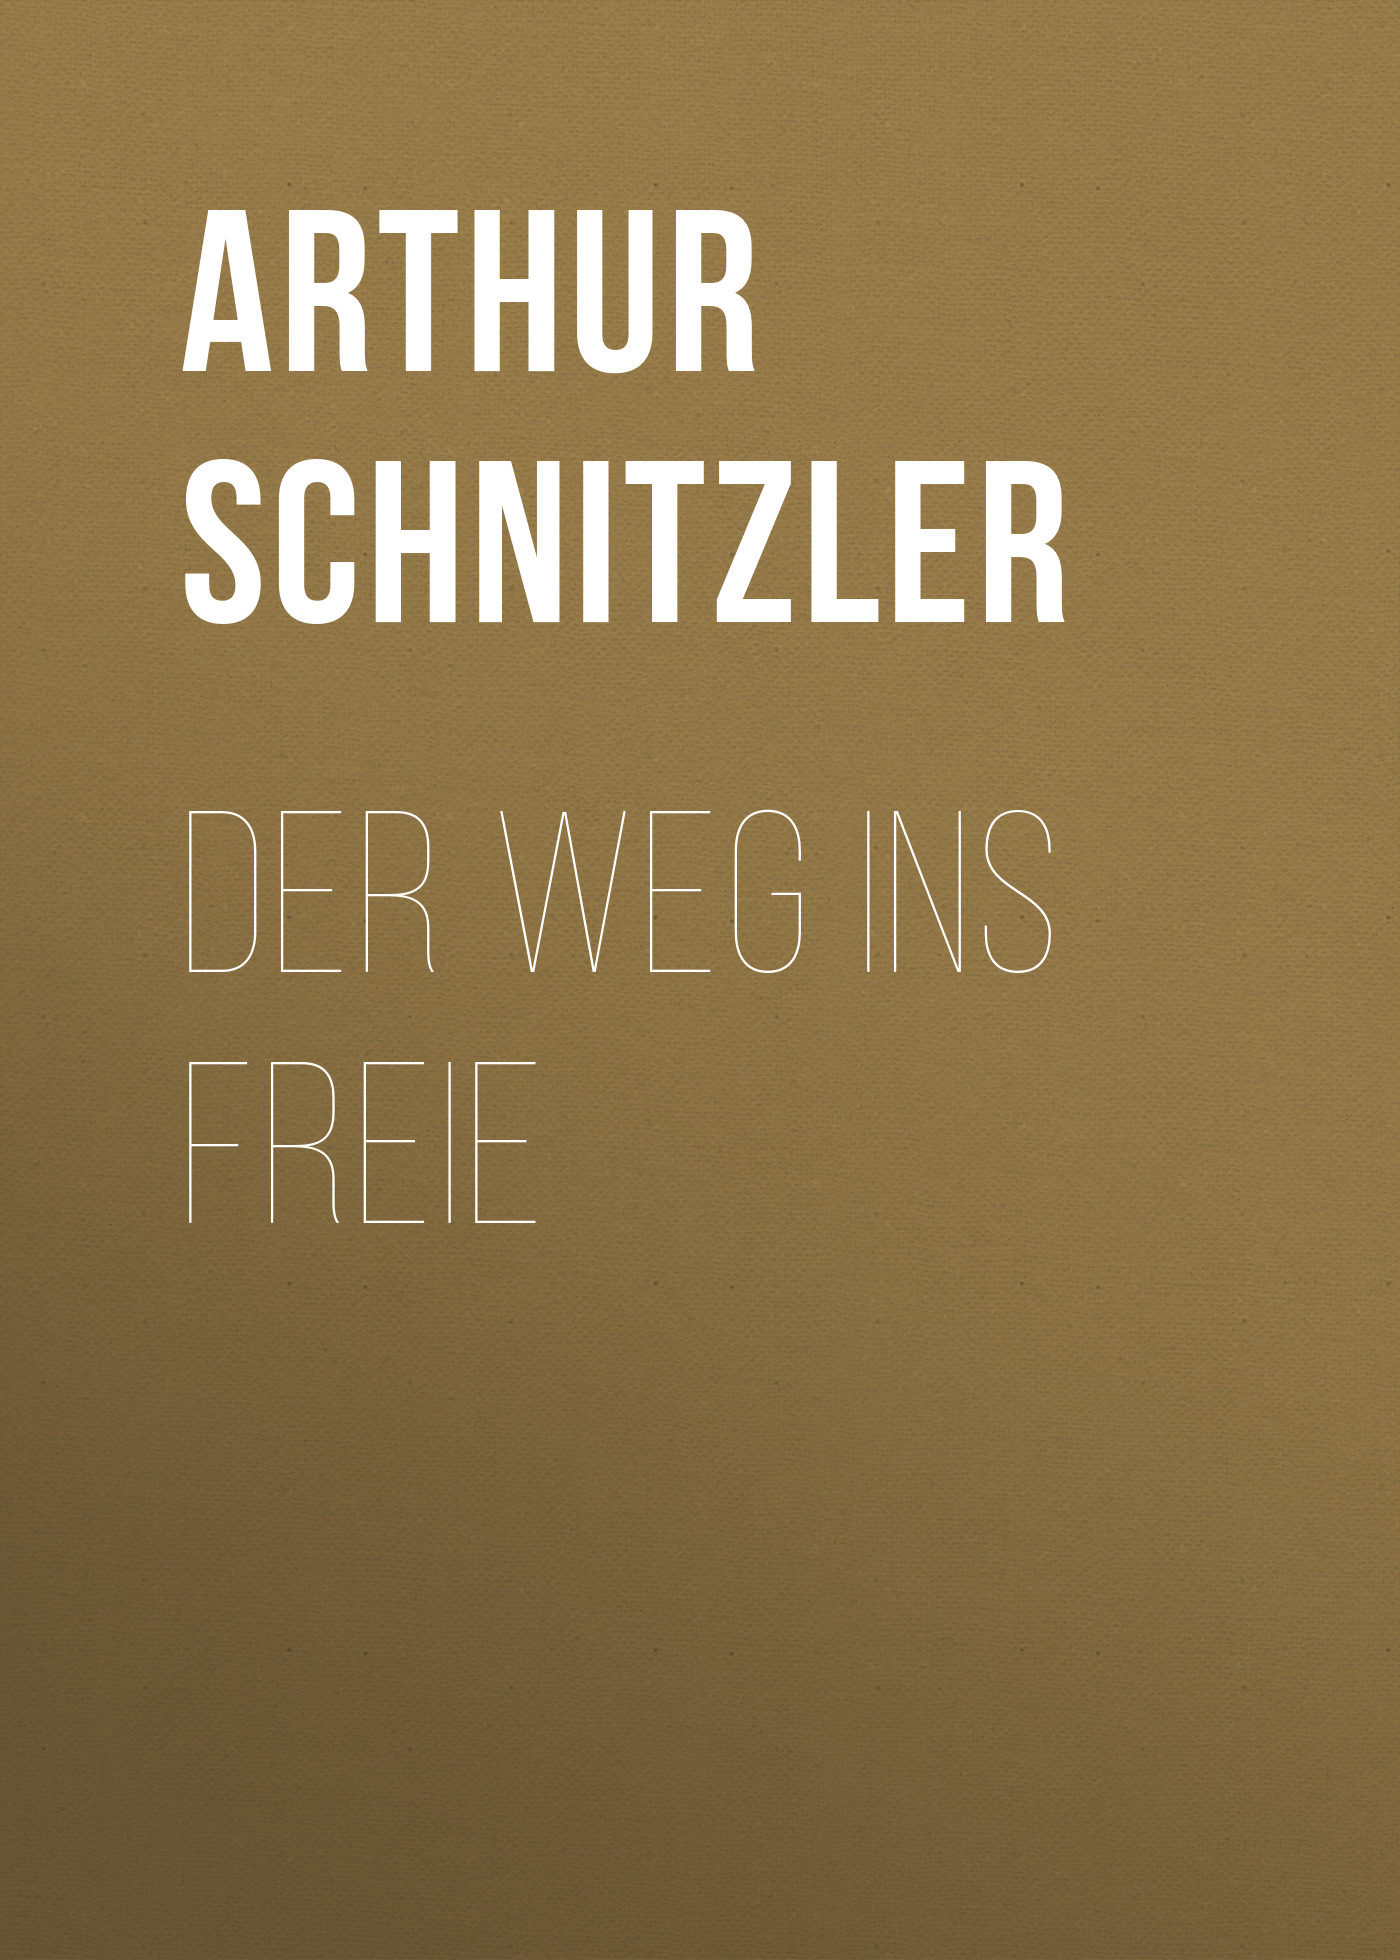 Книга Der Weg ins Freie из серии , созданная Arthur Schnitzler, может относится к жанру Зарубежная классика. Стоимость электронной книги Der Weg ins Freie с идентификатором 48632956 составляет 0 руб.